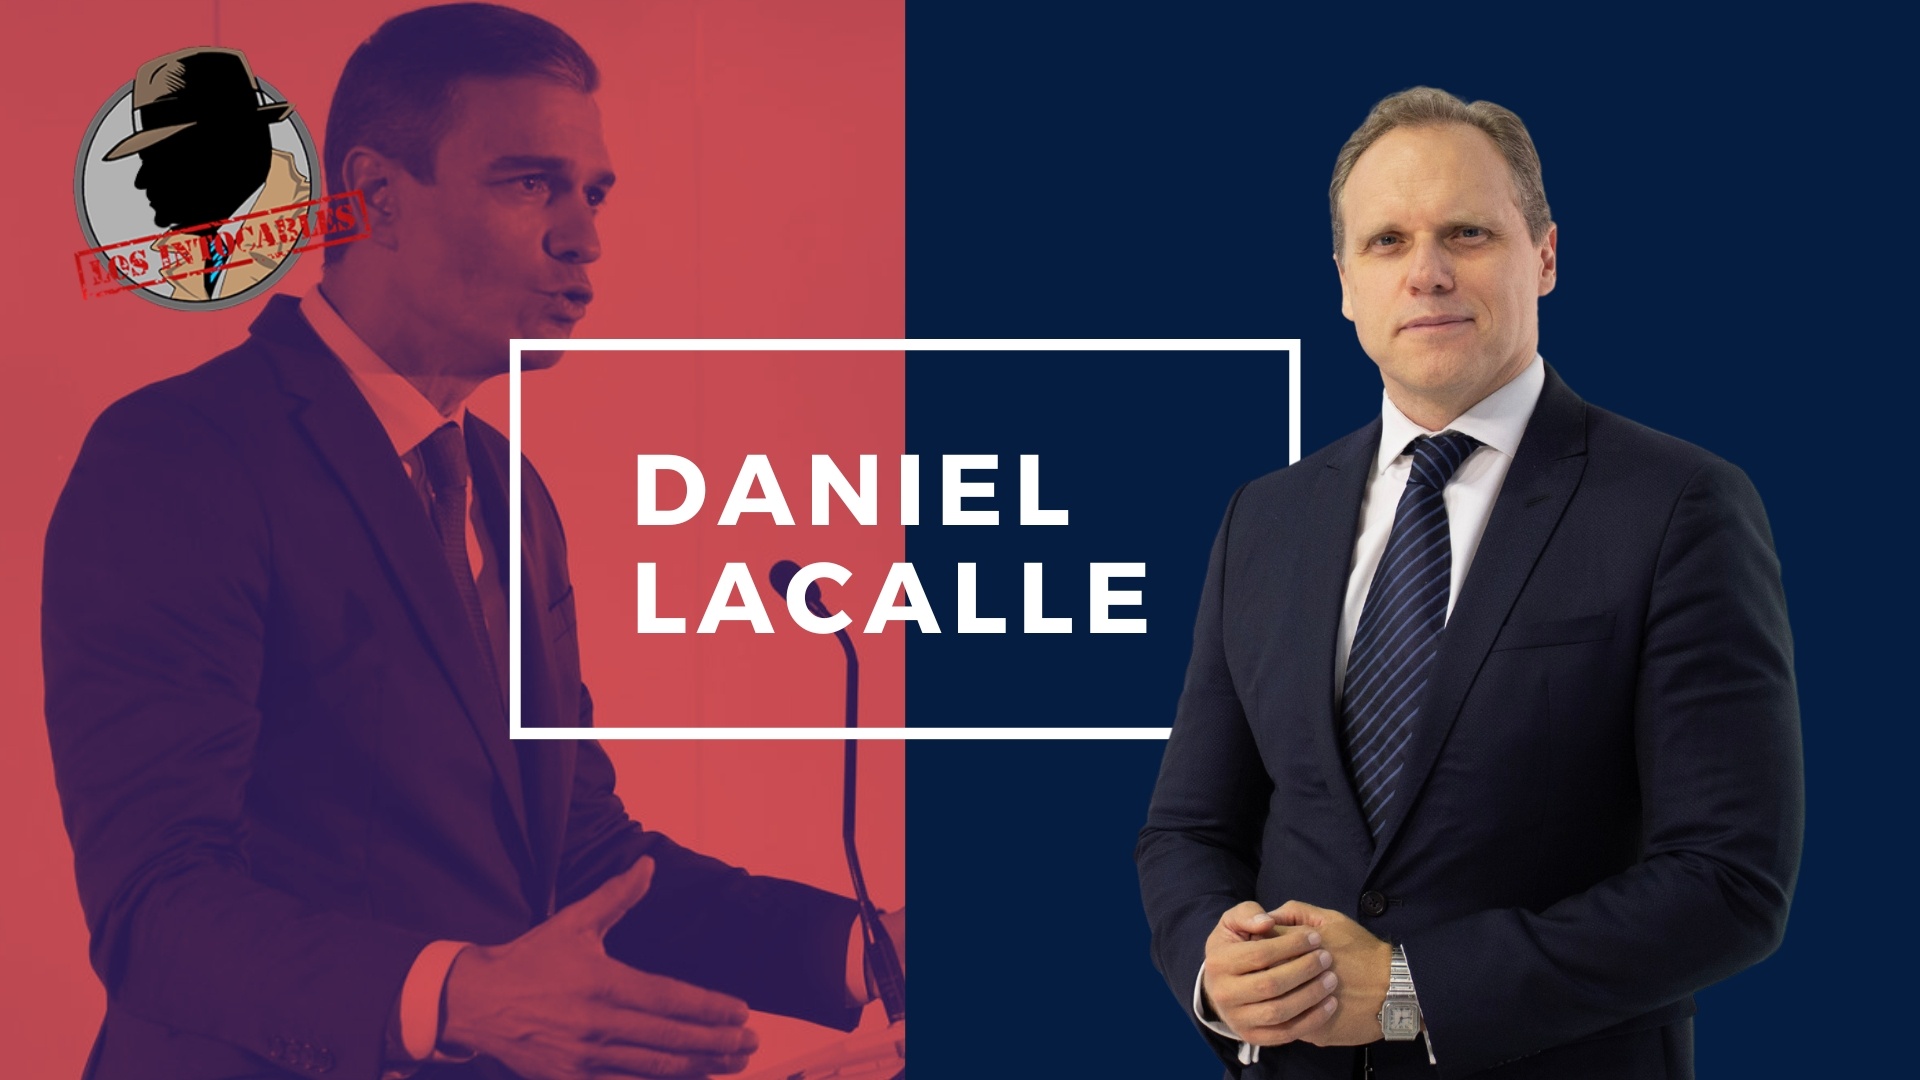 DANIEL LACALLE